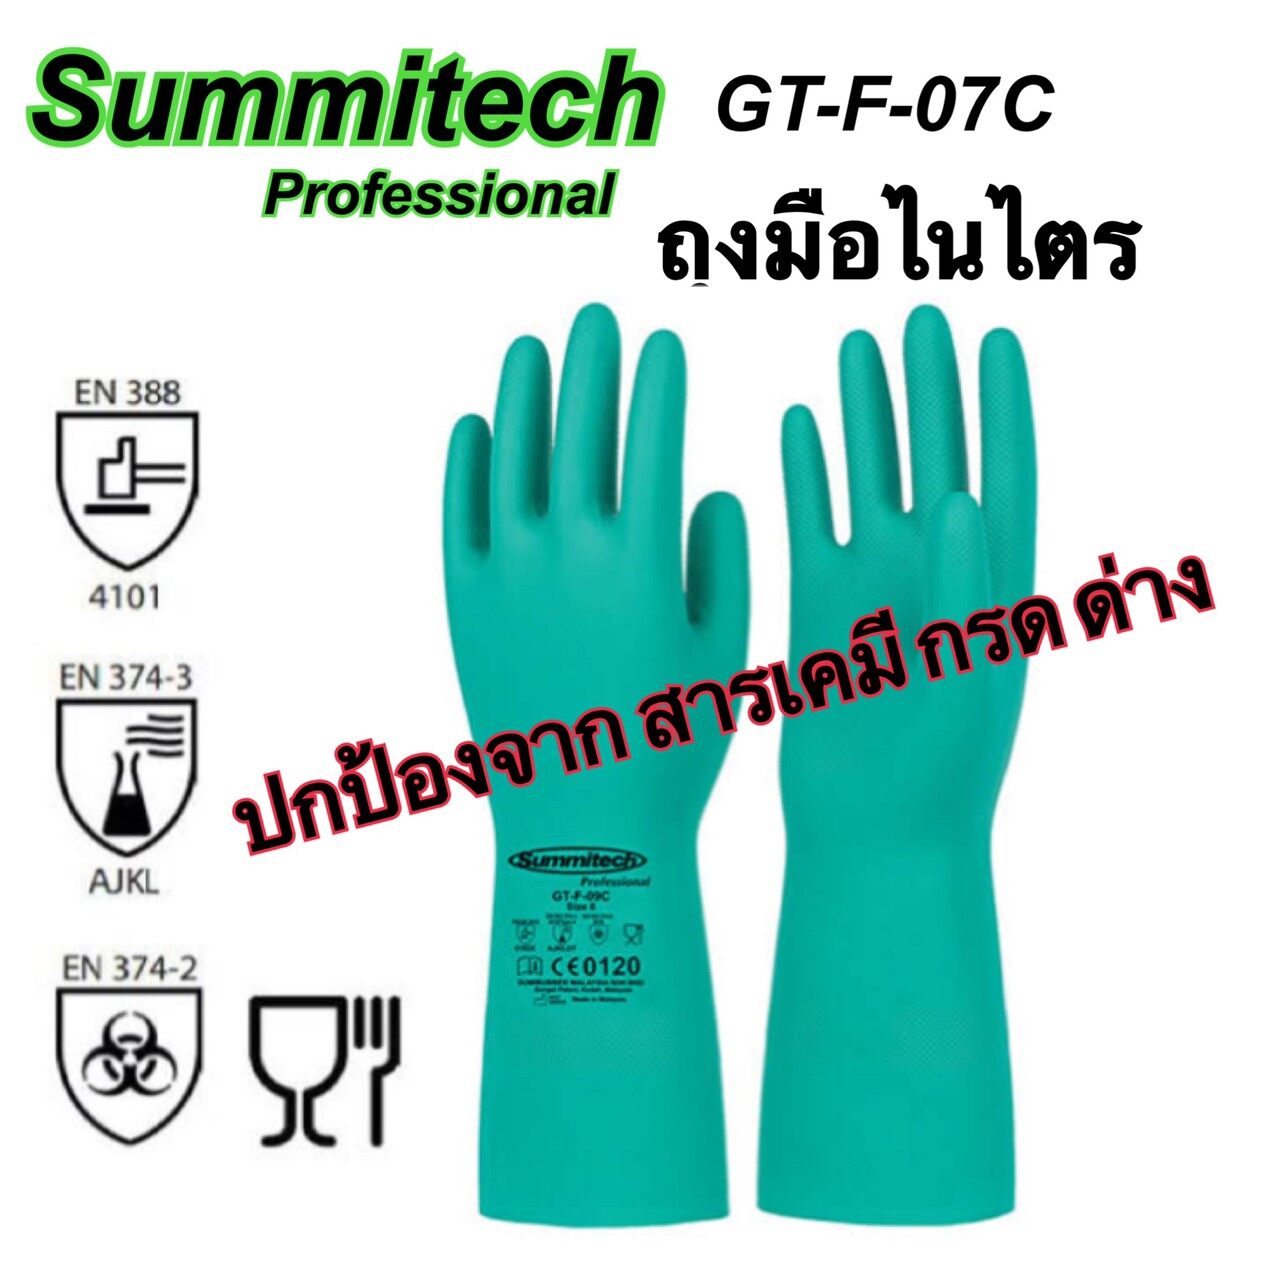 ถุงมือยาง ถุงมือไนไตร ถุงมือป้องกันสารเคมี ถุงมือทำความสะอาด  ถุงมือยางไนไตร ถุงมือกันกรด ด่าง อย่างหนา ใช้ซ้ำได้ ยี่ห้อ Summitech ของแท้